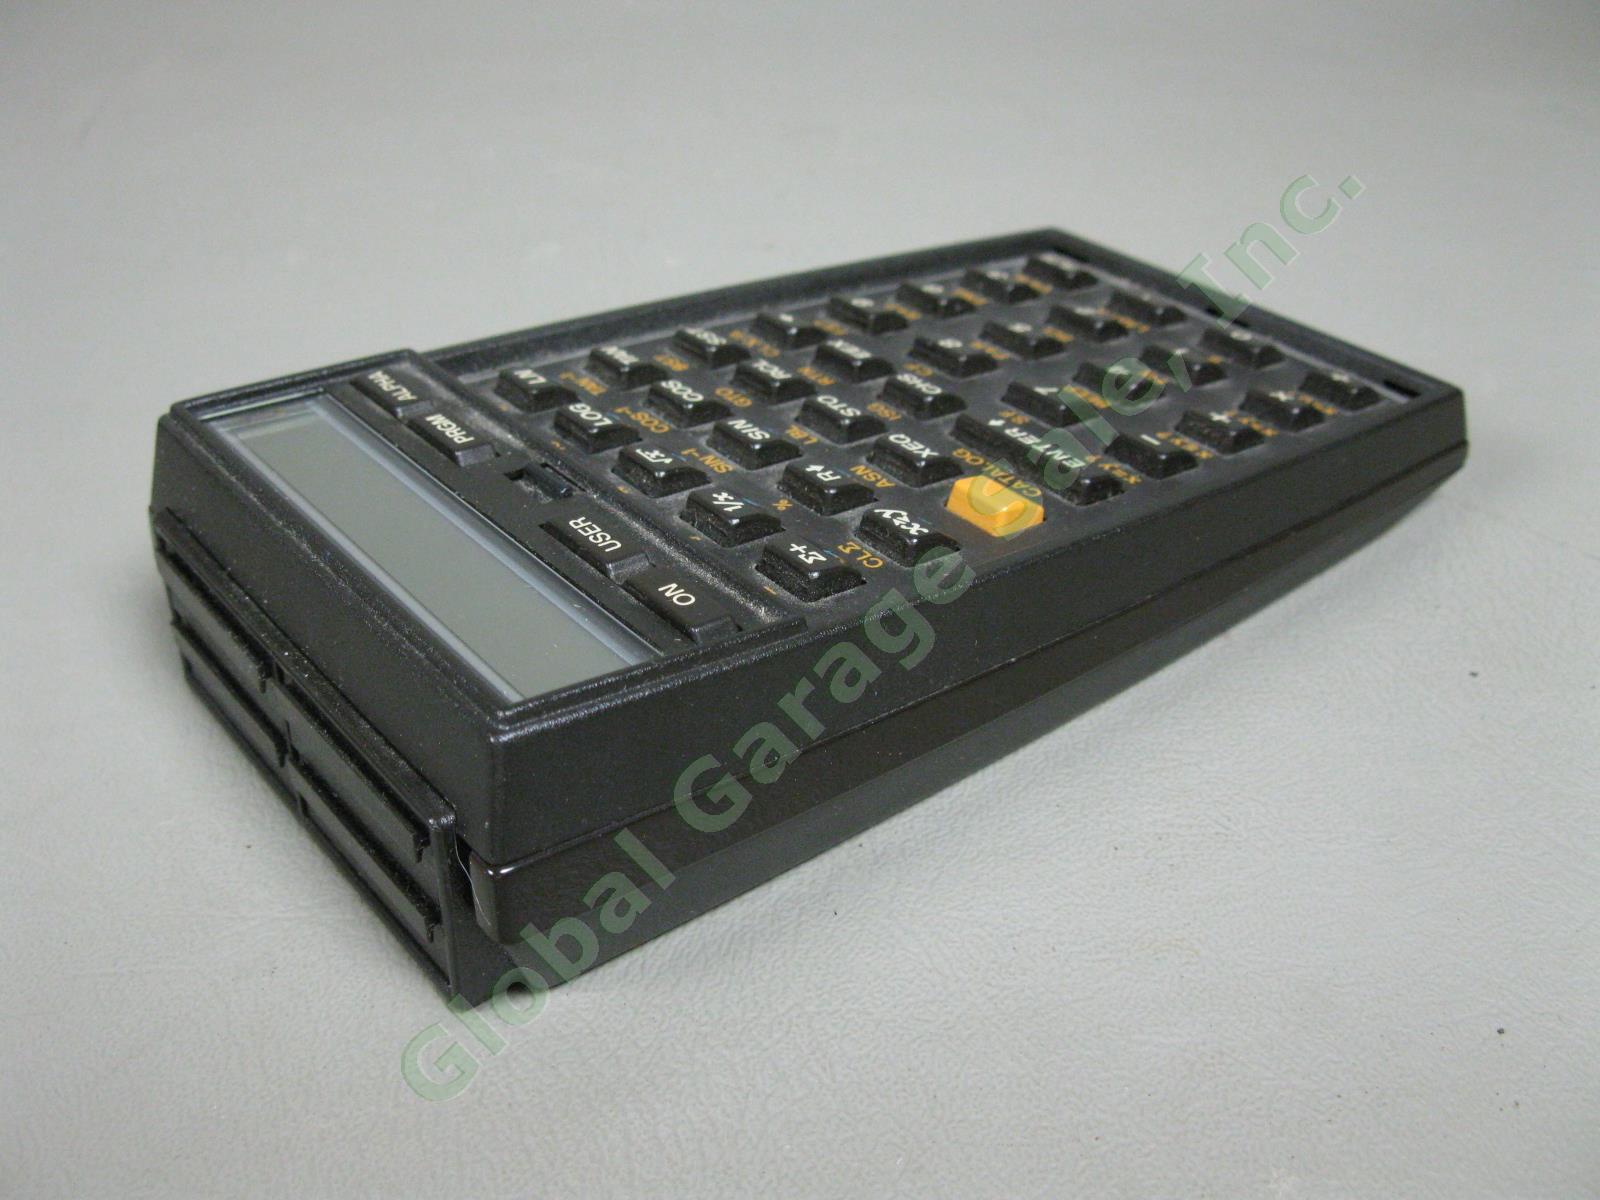 HP-41C Hewlett Packard Scientific System Calculator Exc Cond w/ Original Case NR 4